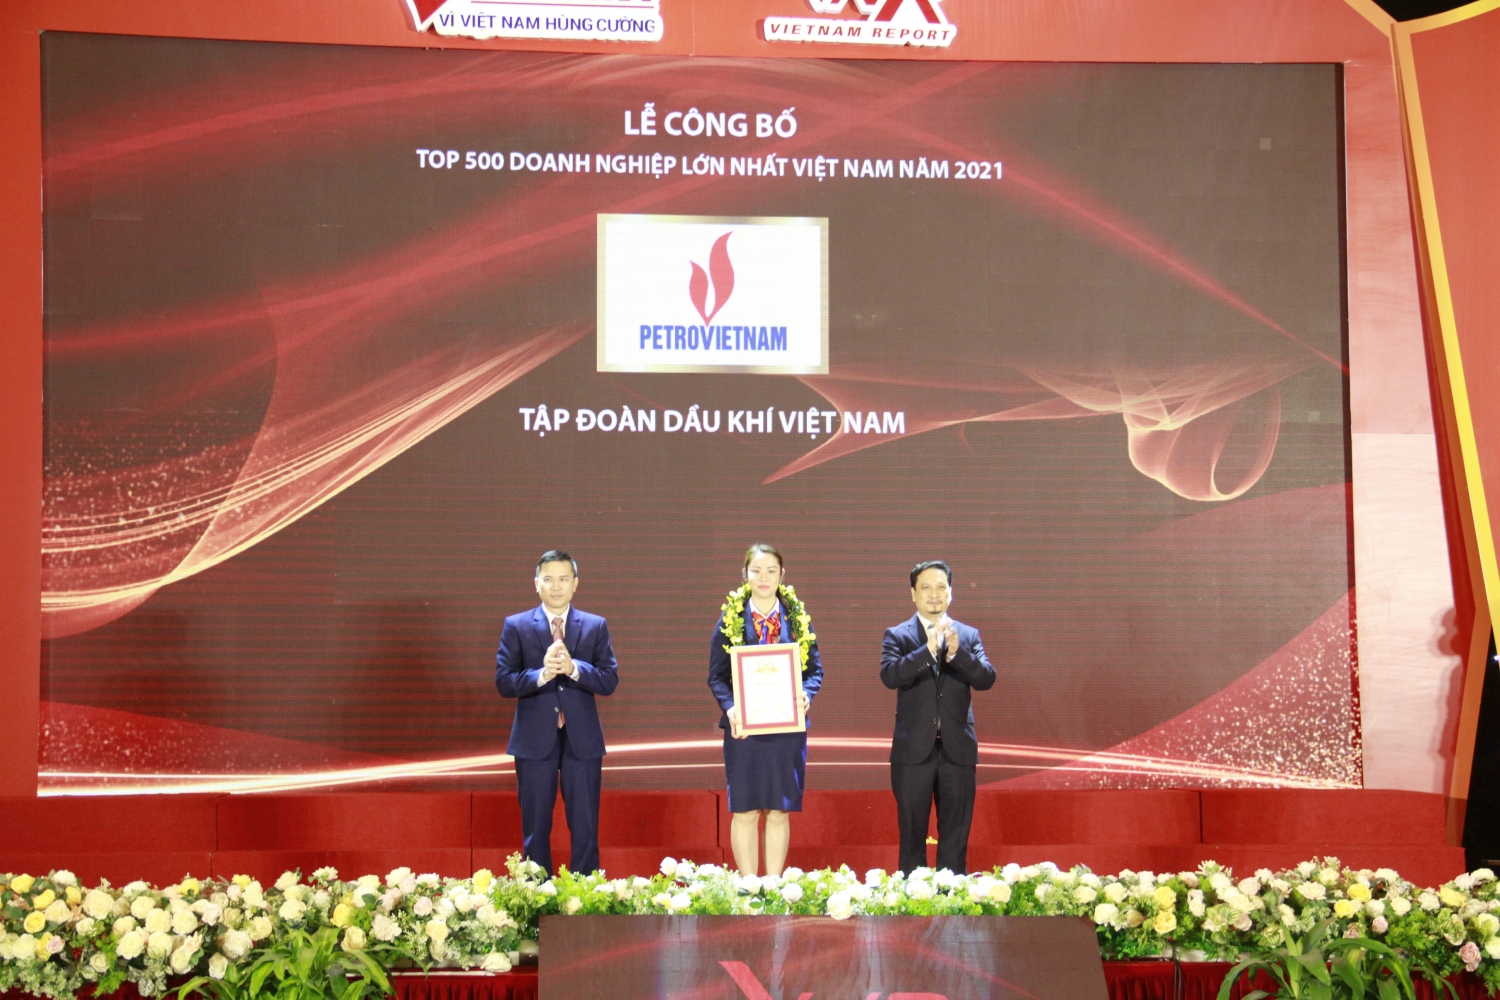 Petrovietnam cùng nhiều doanh nghiệp Dầu khí khẳng định vị thế trong Top 500 doanh nghiệp lớn nhất Việt Nam”